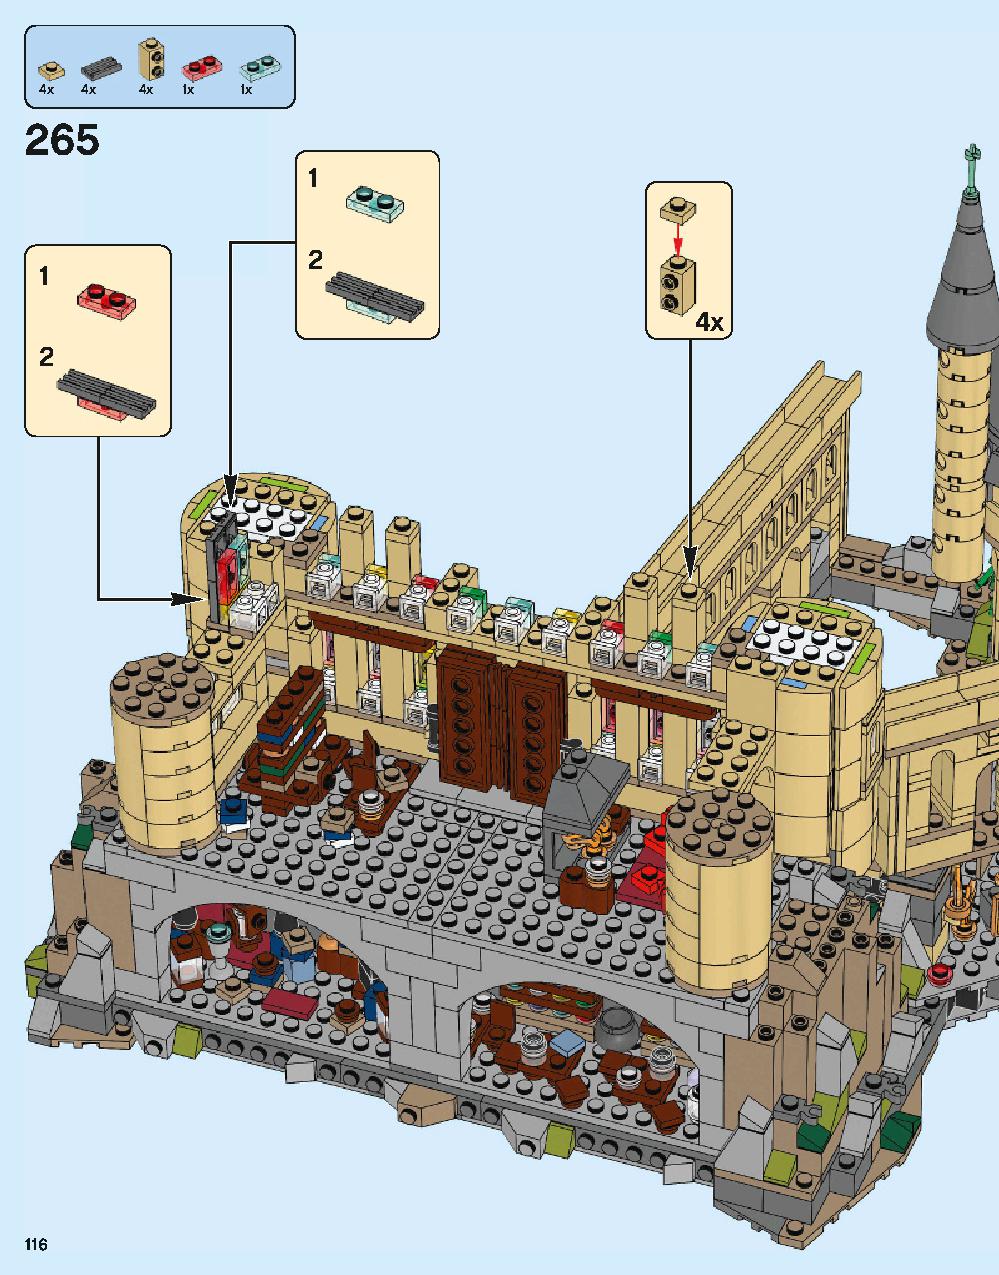 ホグワーツ城 71043 レゴの商品情報 レゴの説明書・組立方法 116 page